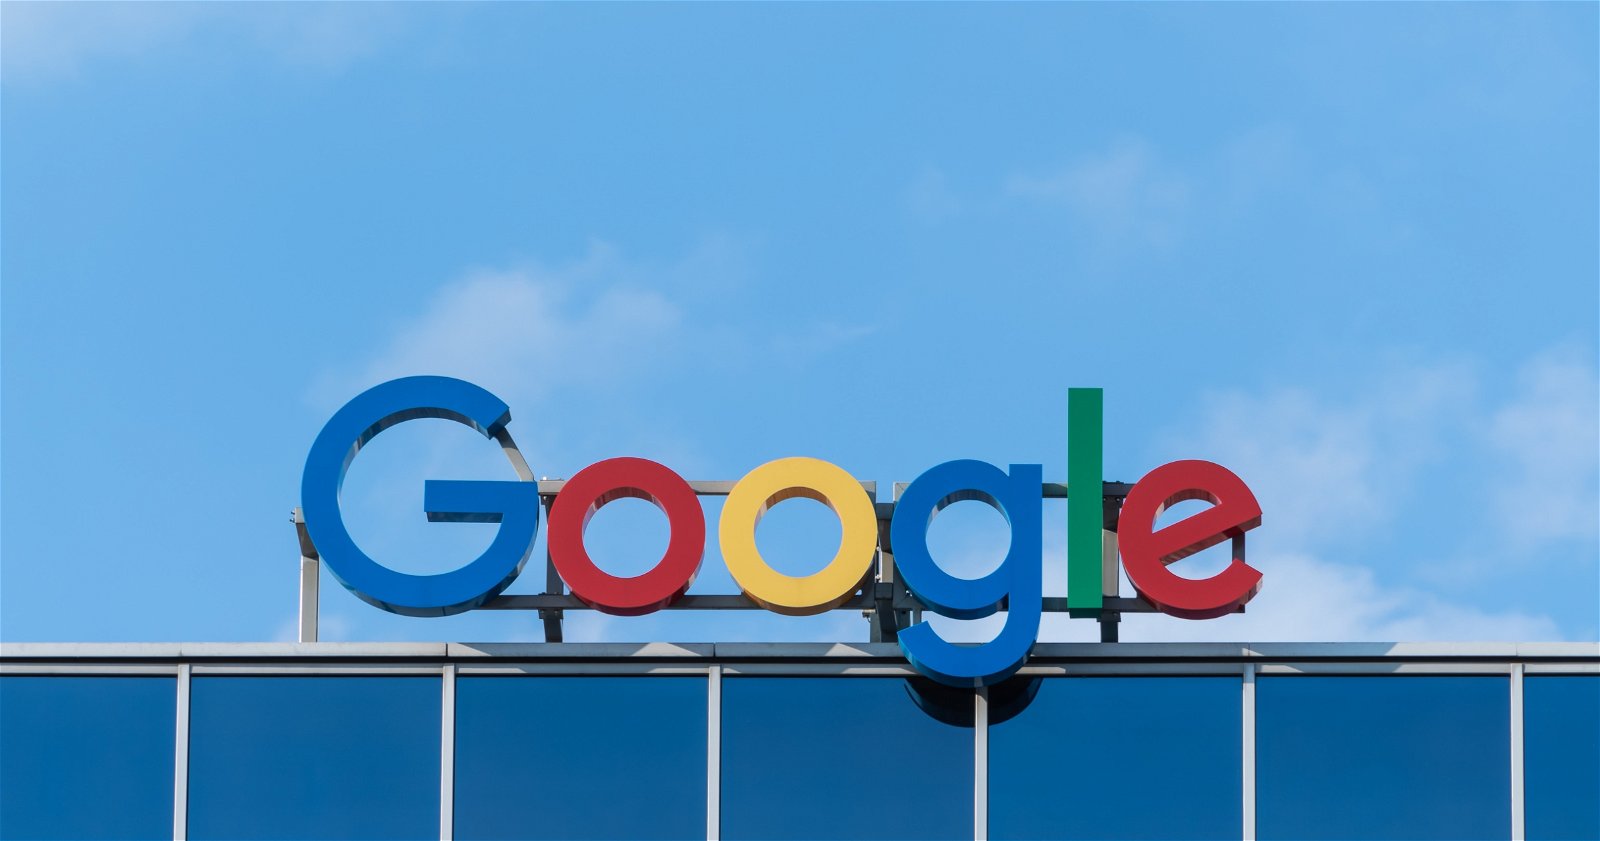 Letras del logo de Google sobre un edificio.